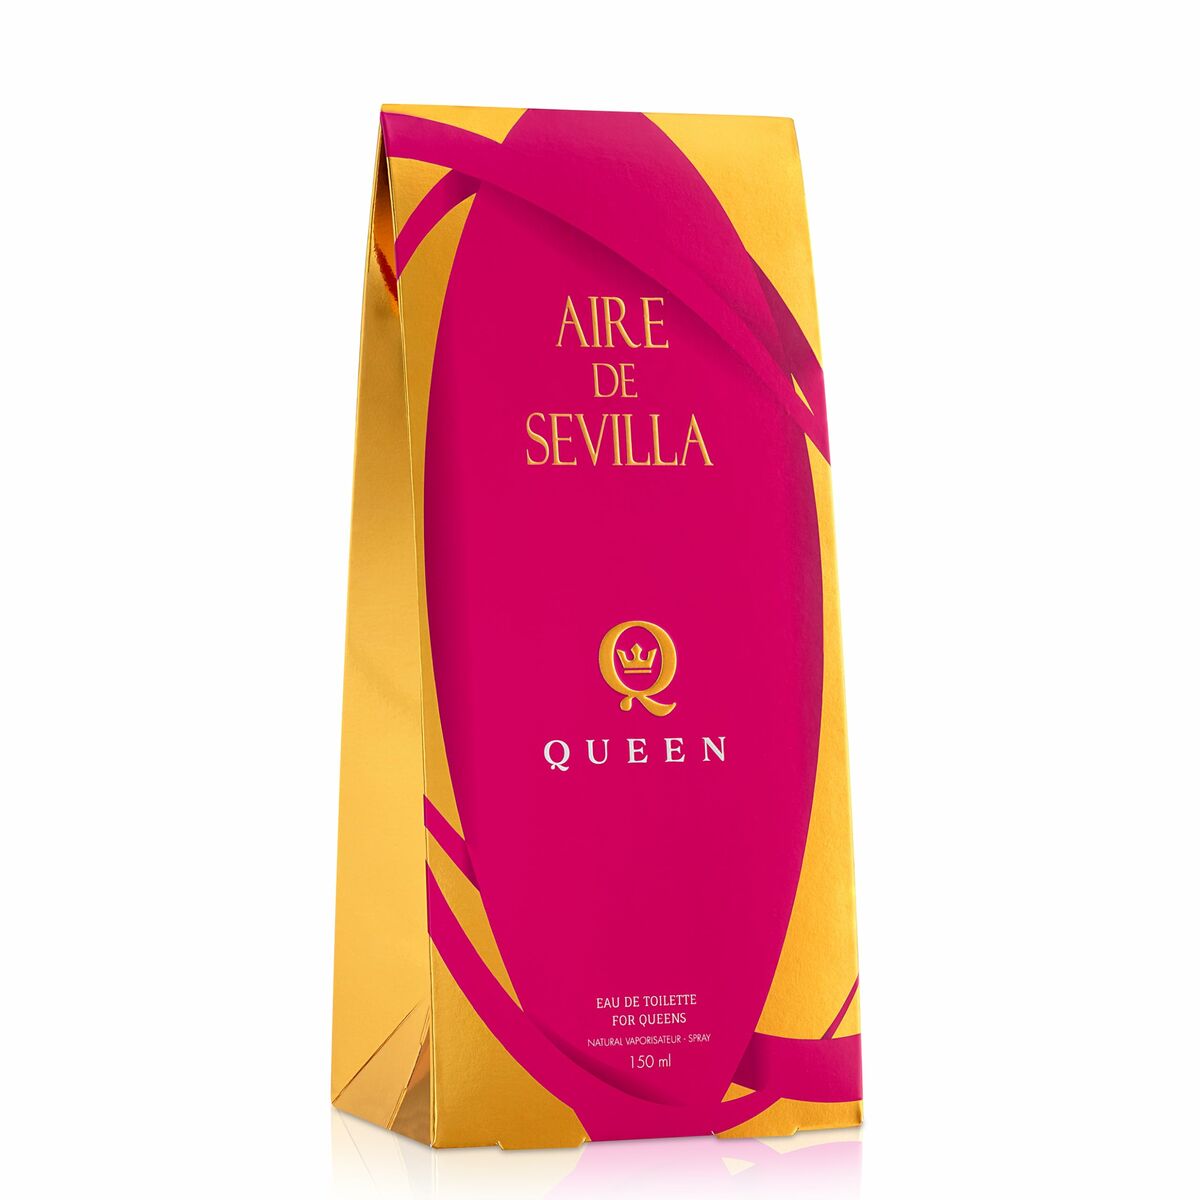 Damesparfum Aire Sevilla EDT Queen 150 ml